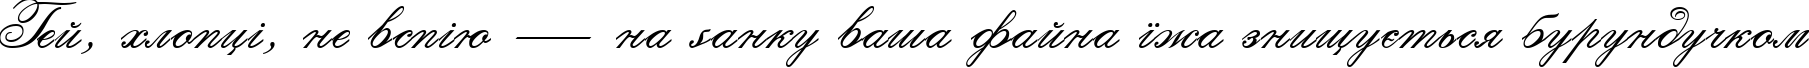 Пример написания шрифтом Calligraphia Two текста на украинском